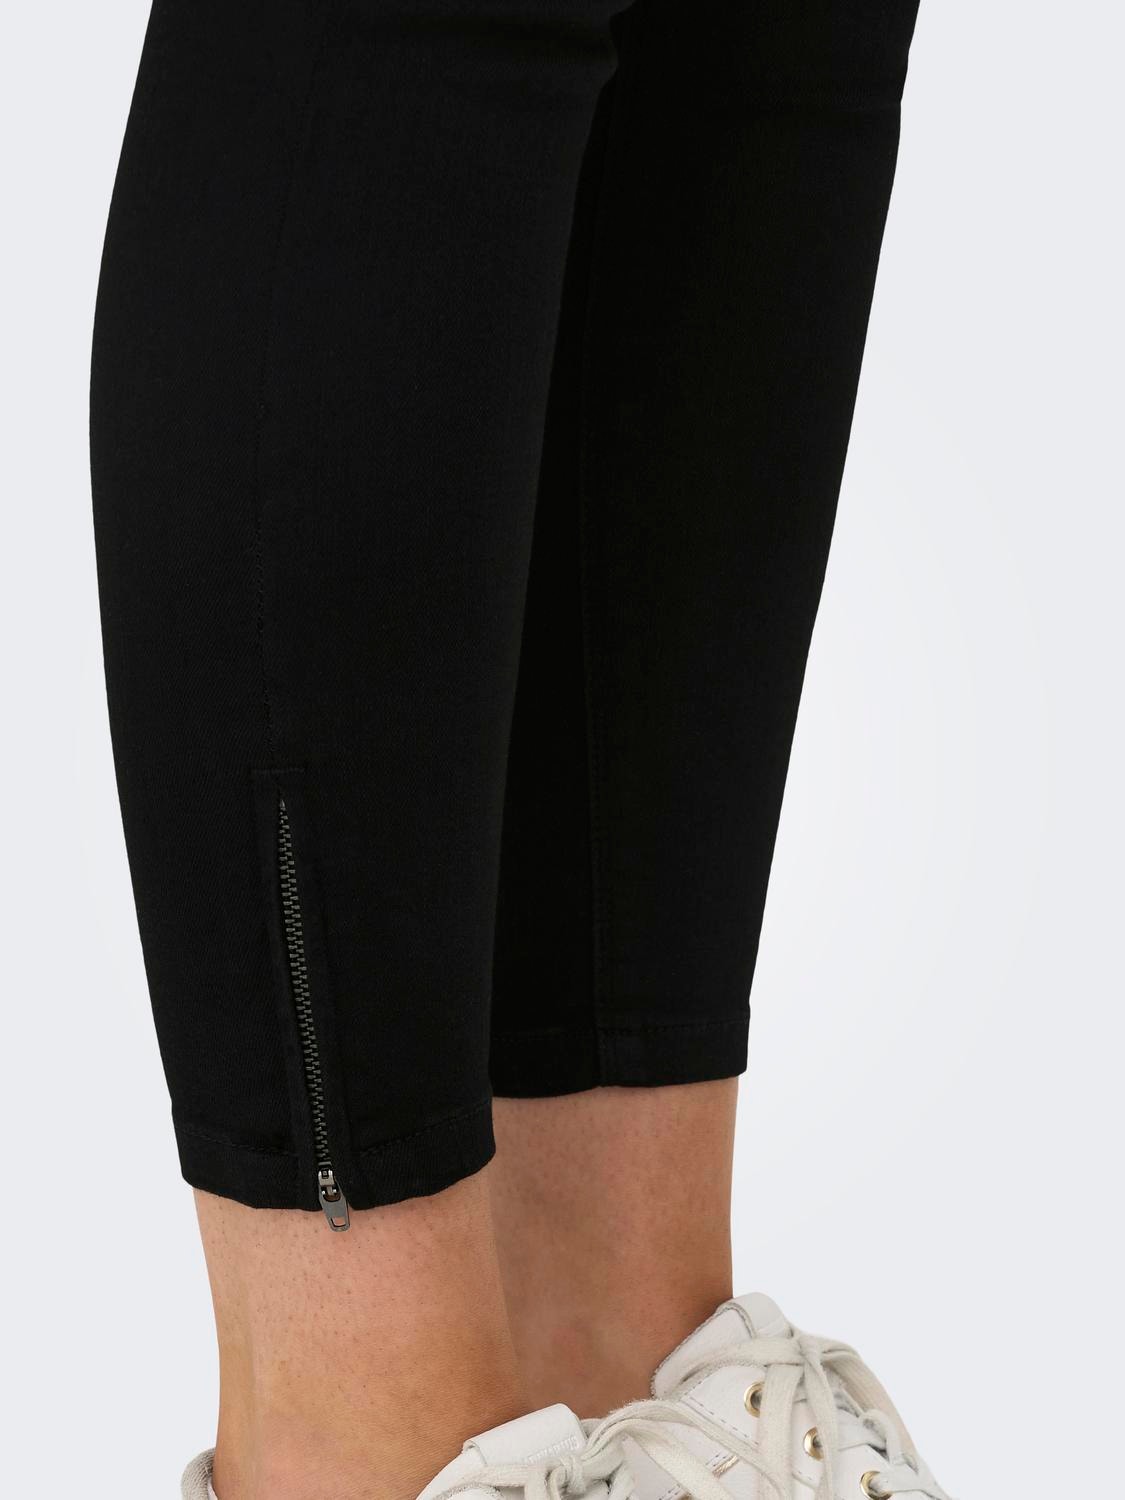 ONLY Skinny Fit Mittlere Taille Reißverschluss am Beinabschluss Jeans -Black - 15243185